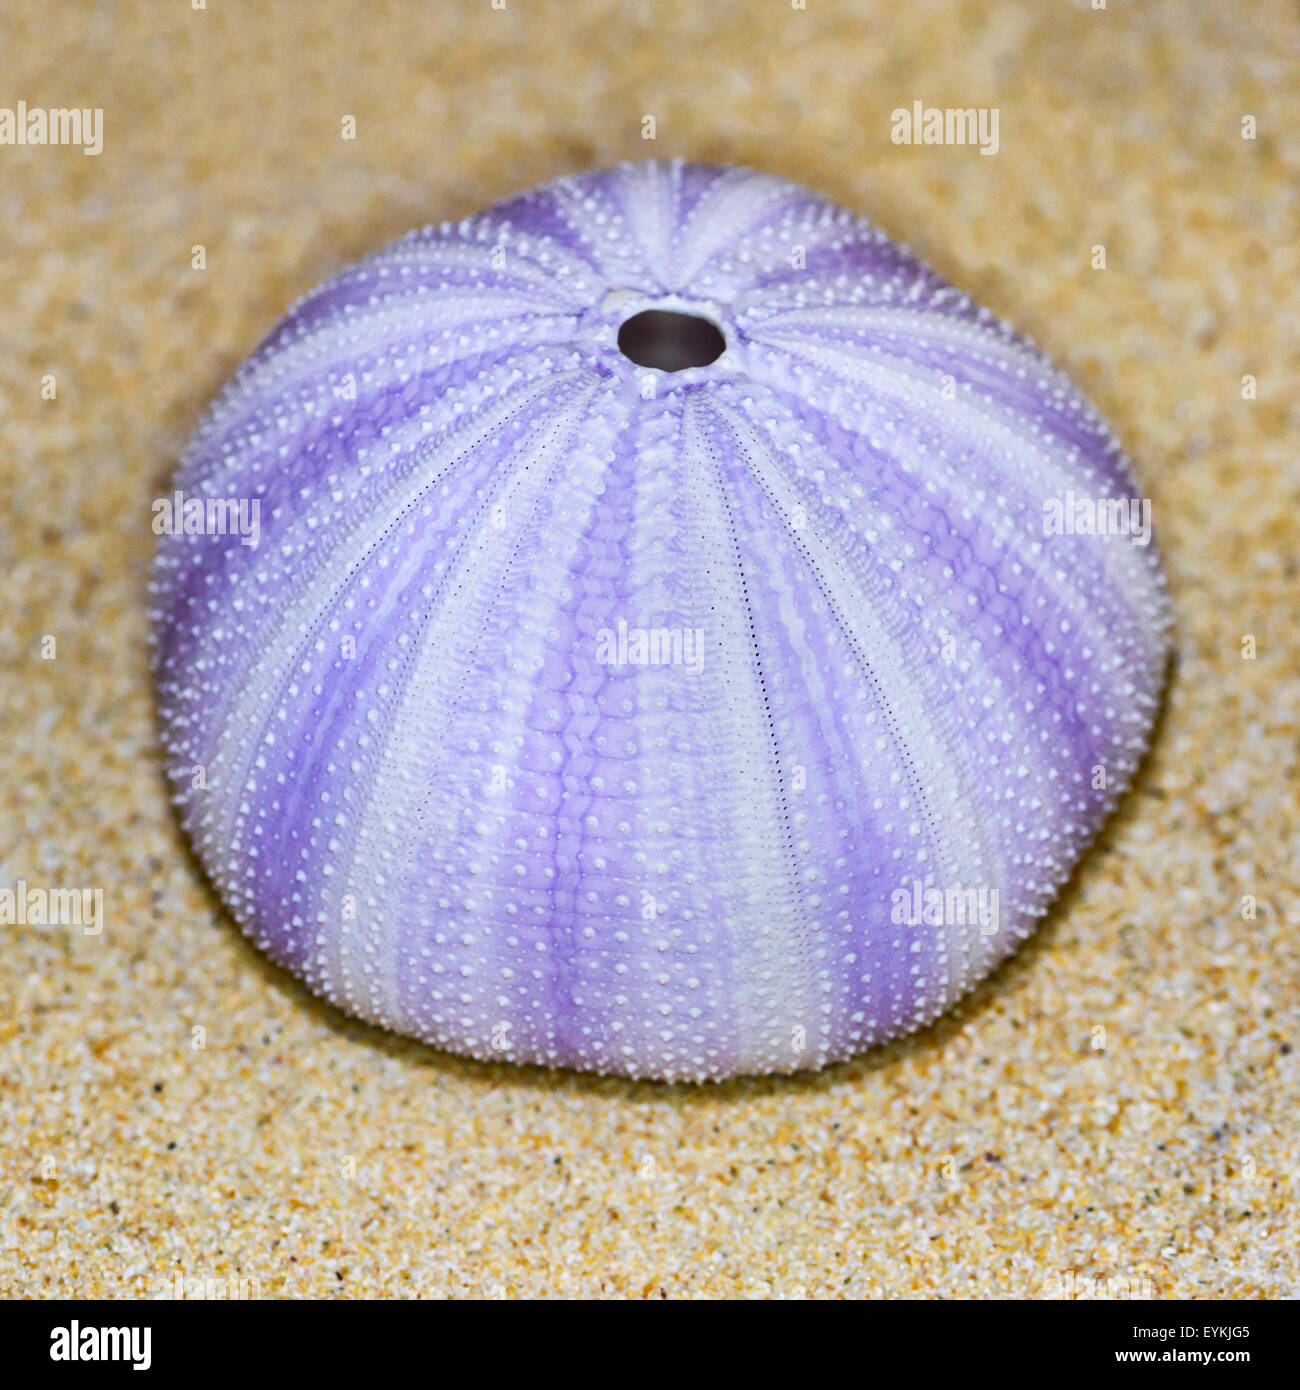 Guscio colorato di ricci di mare o di Urchin è rotondo e spinose con viola e bianco su sabbia Foto Stock